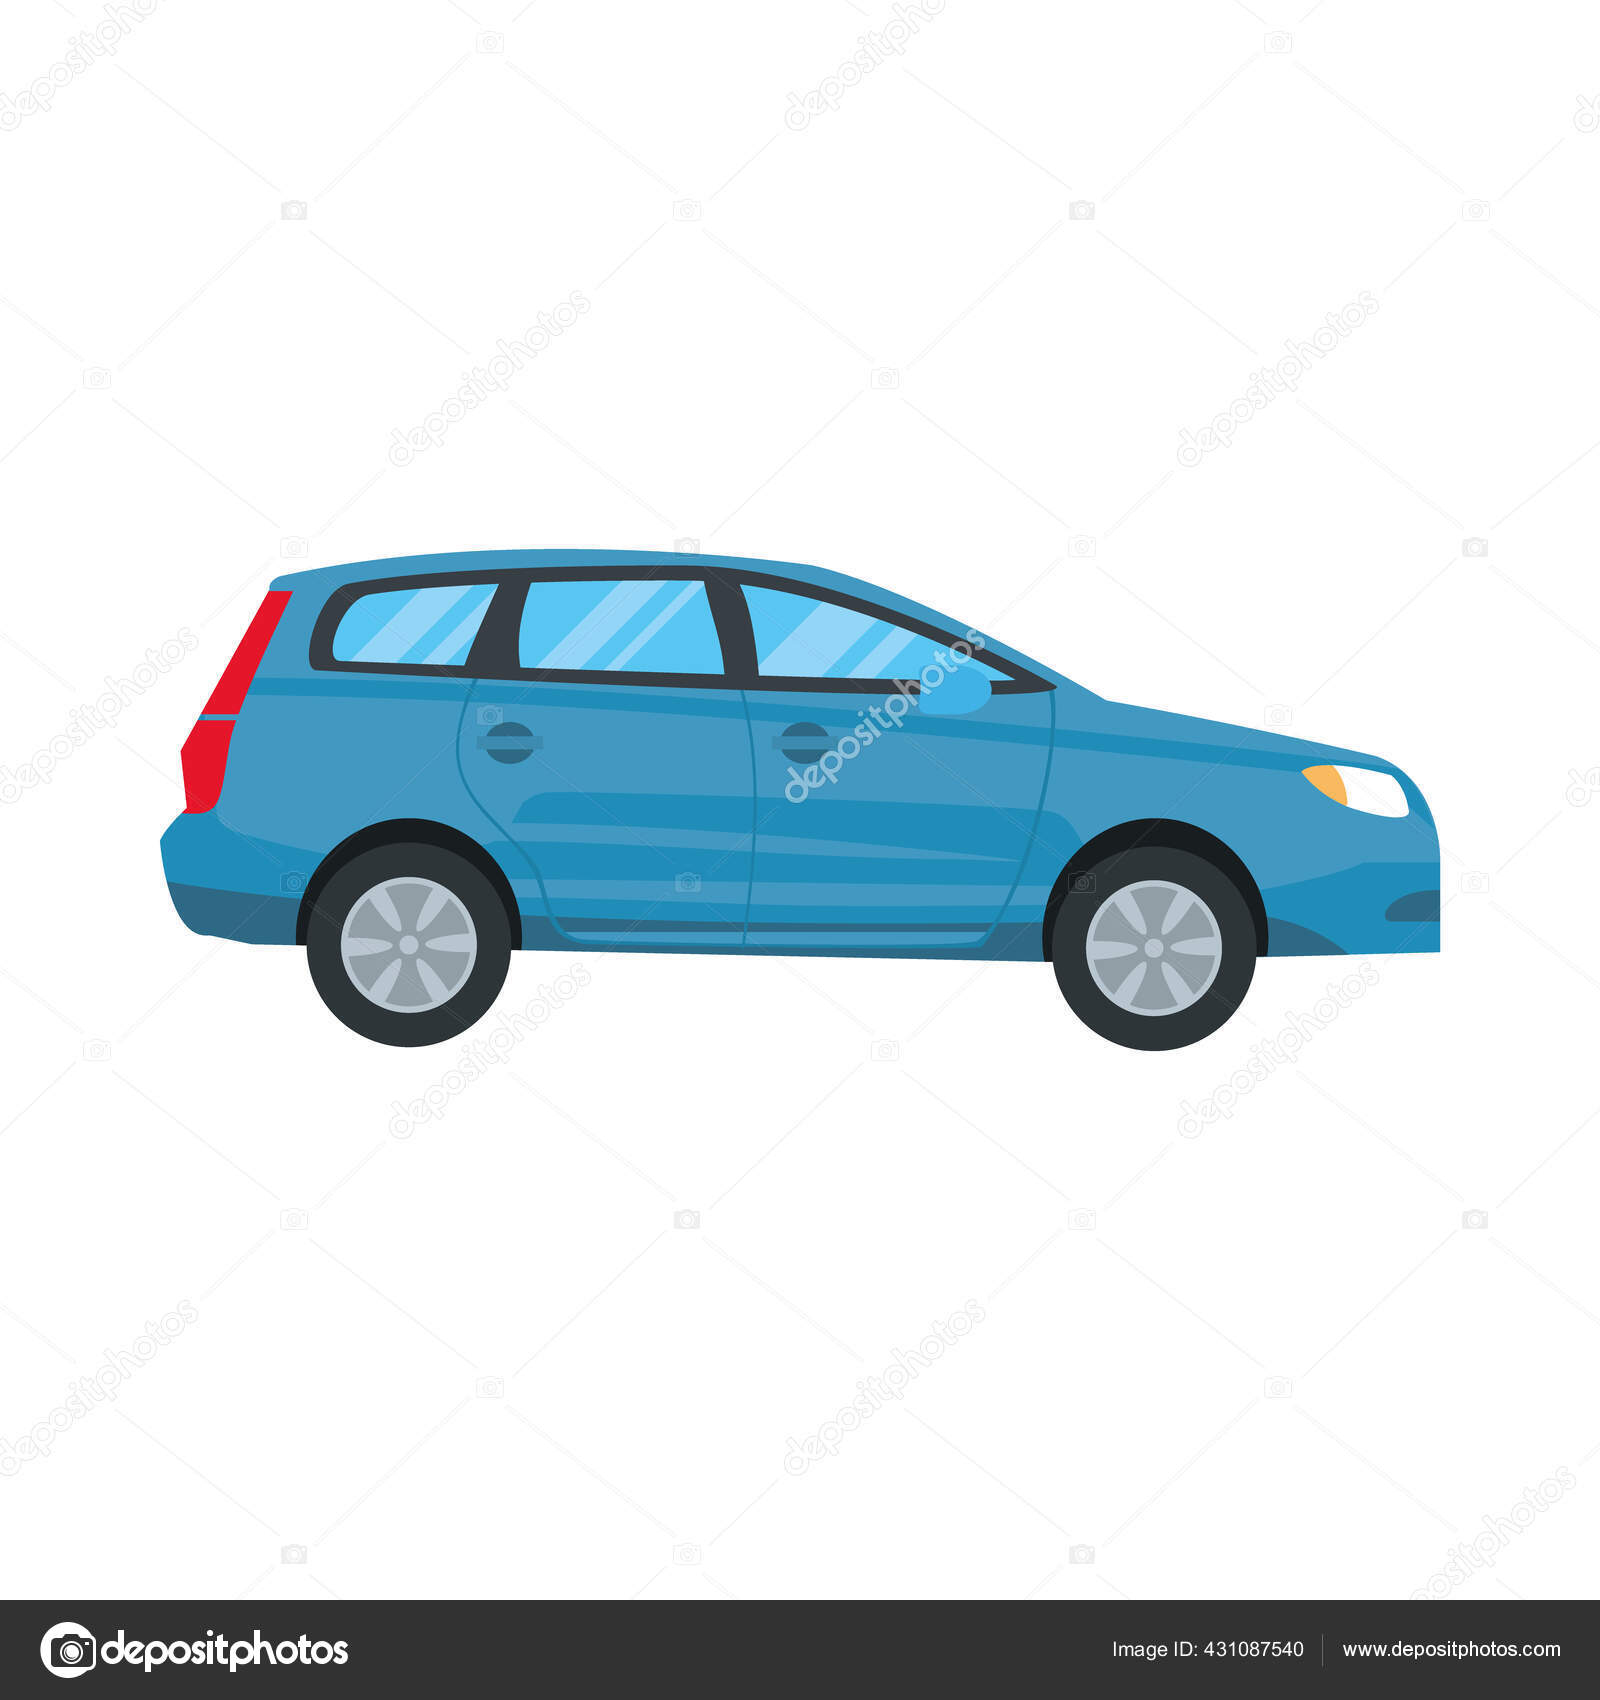 Bạn đang tìm kiếm một biểu tượng cho chiếc SUV màu xanh của mình? Bộ sưu tập hình ảnh liên quan đến từ khóa này sẽ đem đến cho bạn rất nhiều lựa chọn với các thiết kế độc đáo và đẹp mắt.